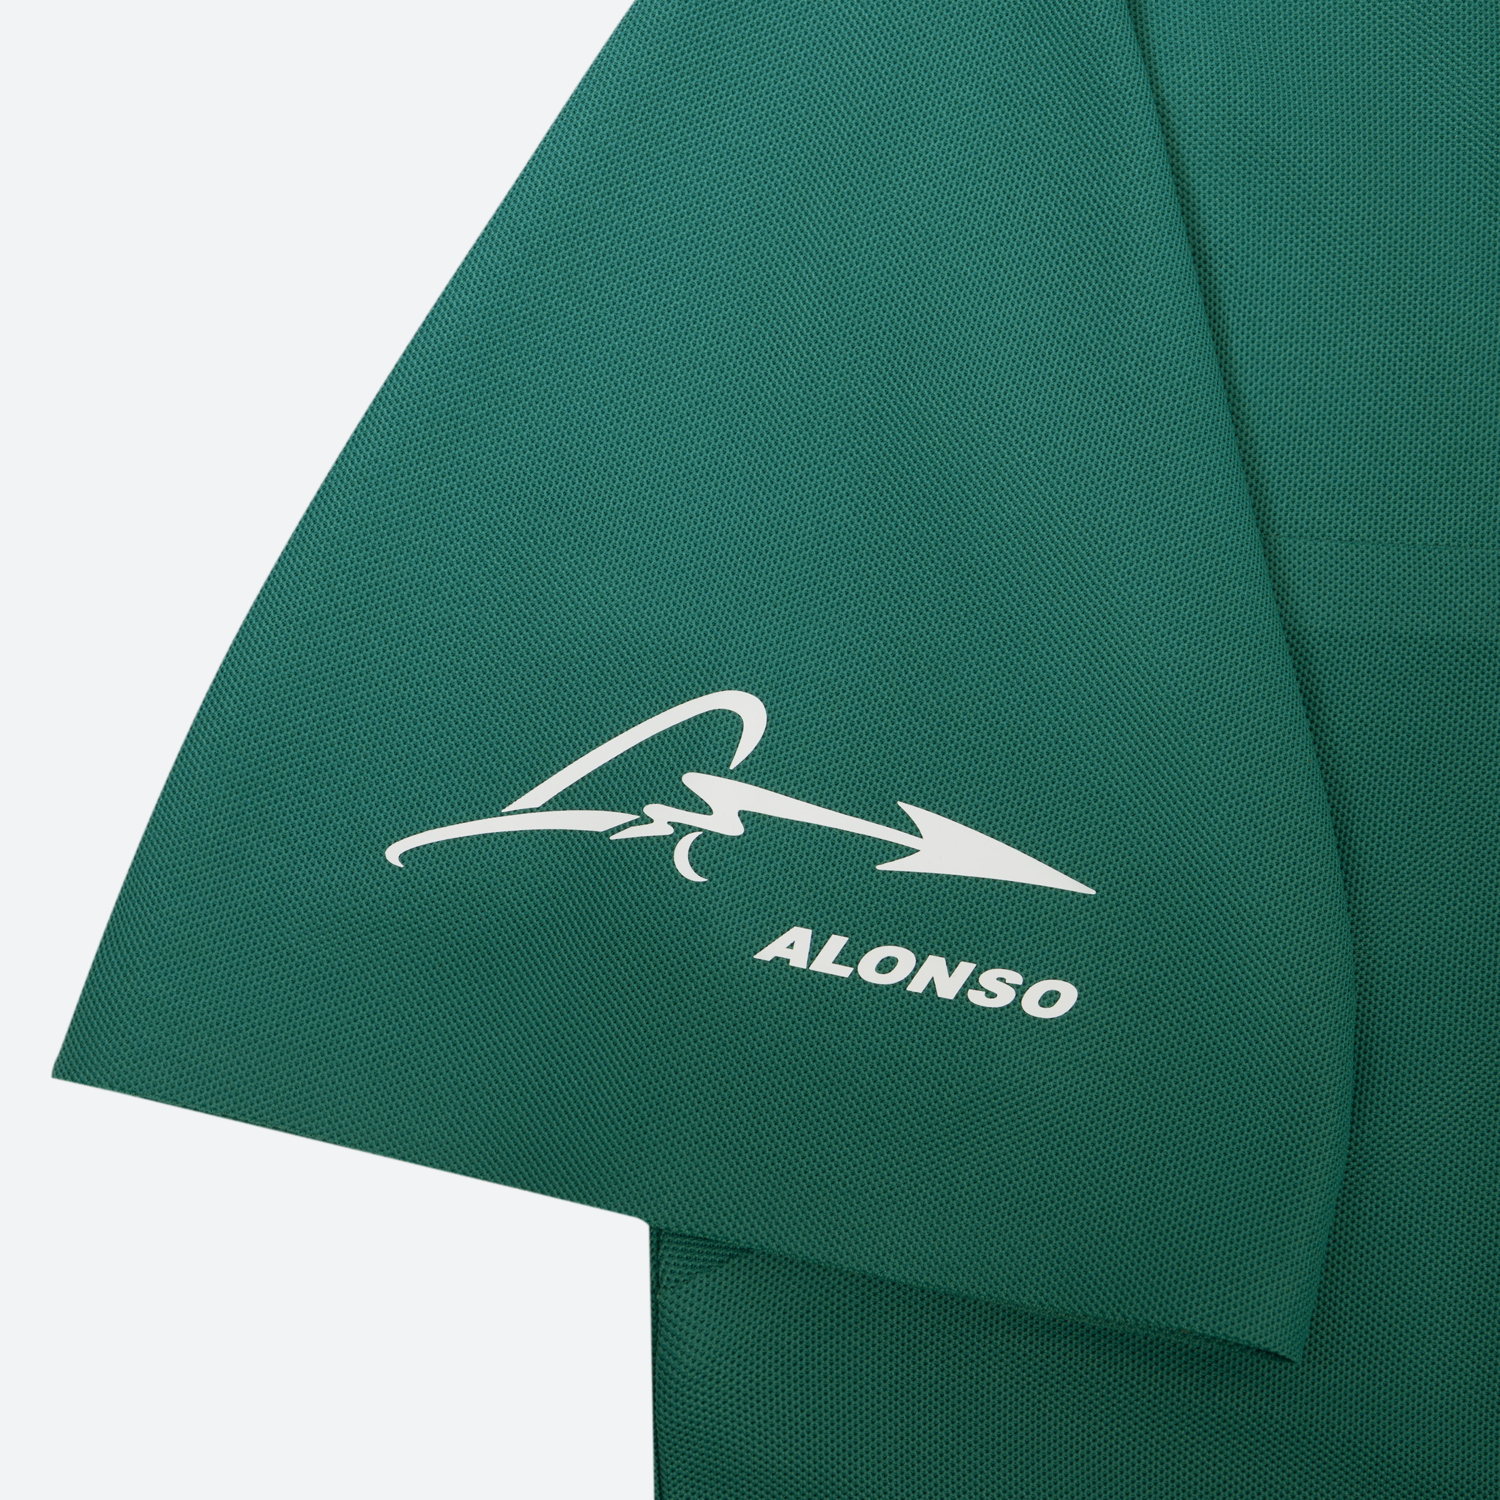 Aston Martin F1 Team x Kimoa Minimal Polo Shirt green